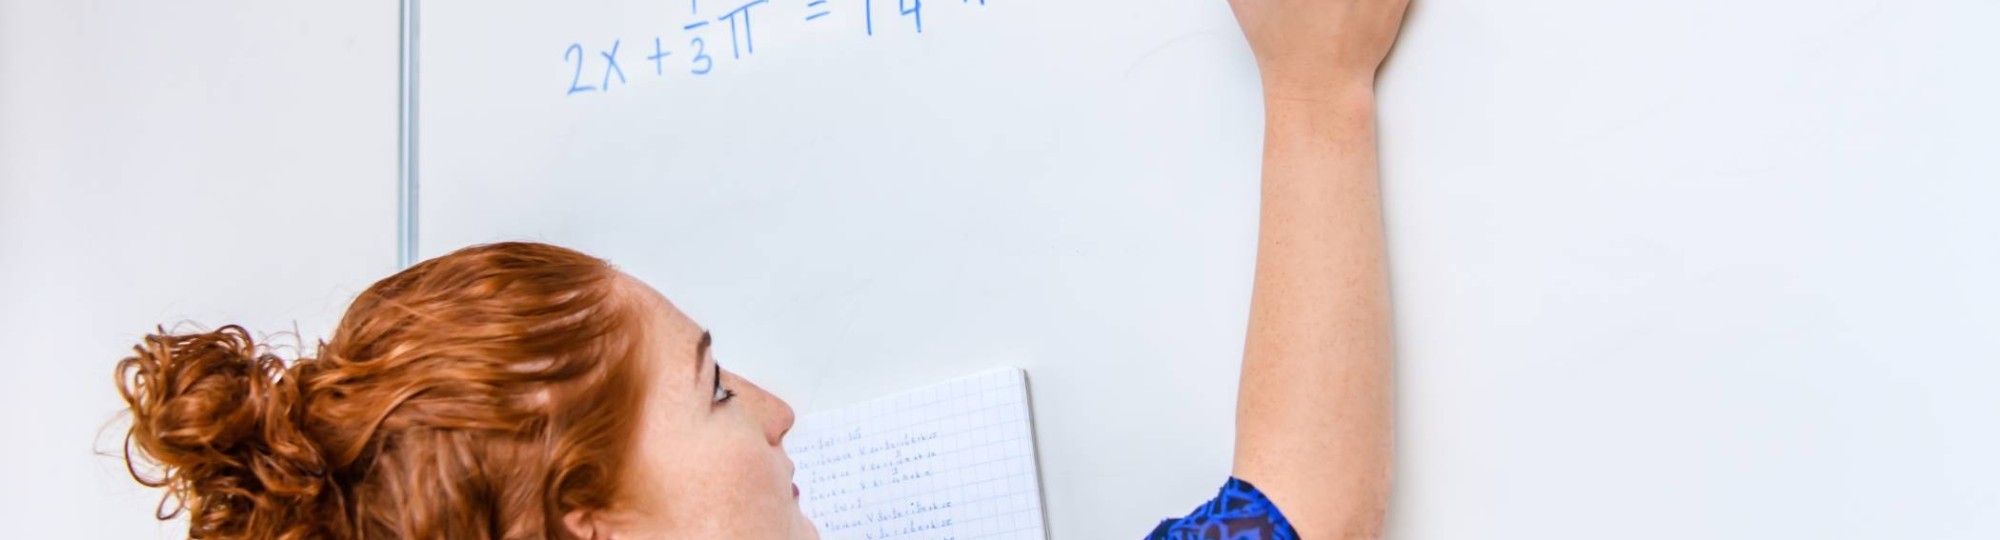 Wiskunde studente schrijft een wiskundige formule op het bord met een blauwe stift. 